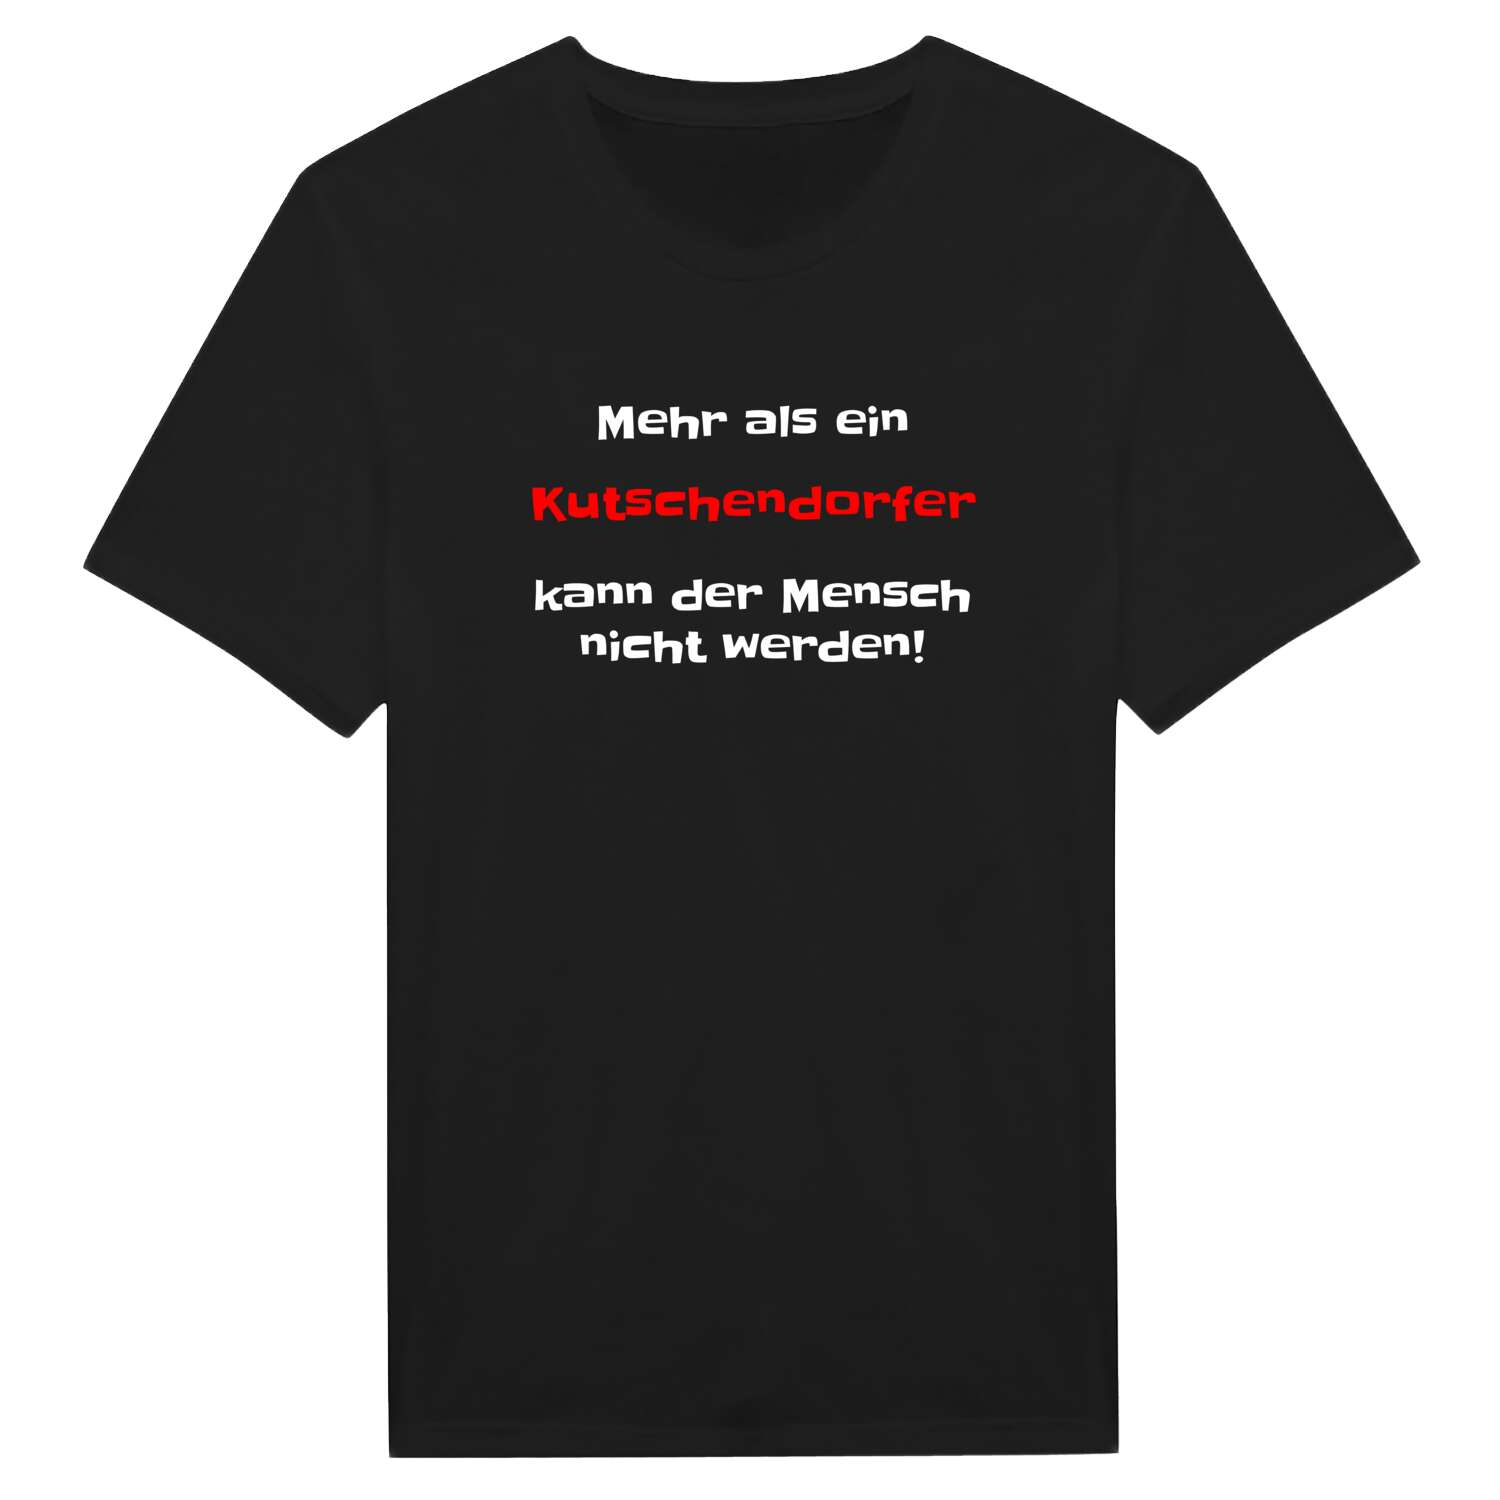 Kutschendorf T-Shirt »Mehr als ein«